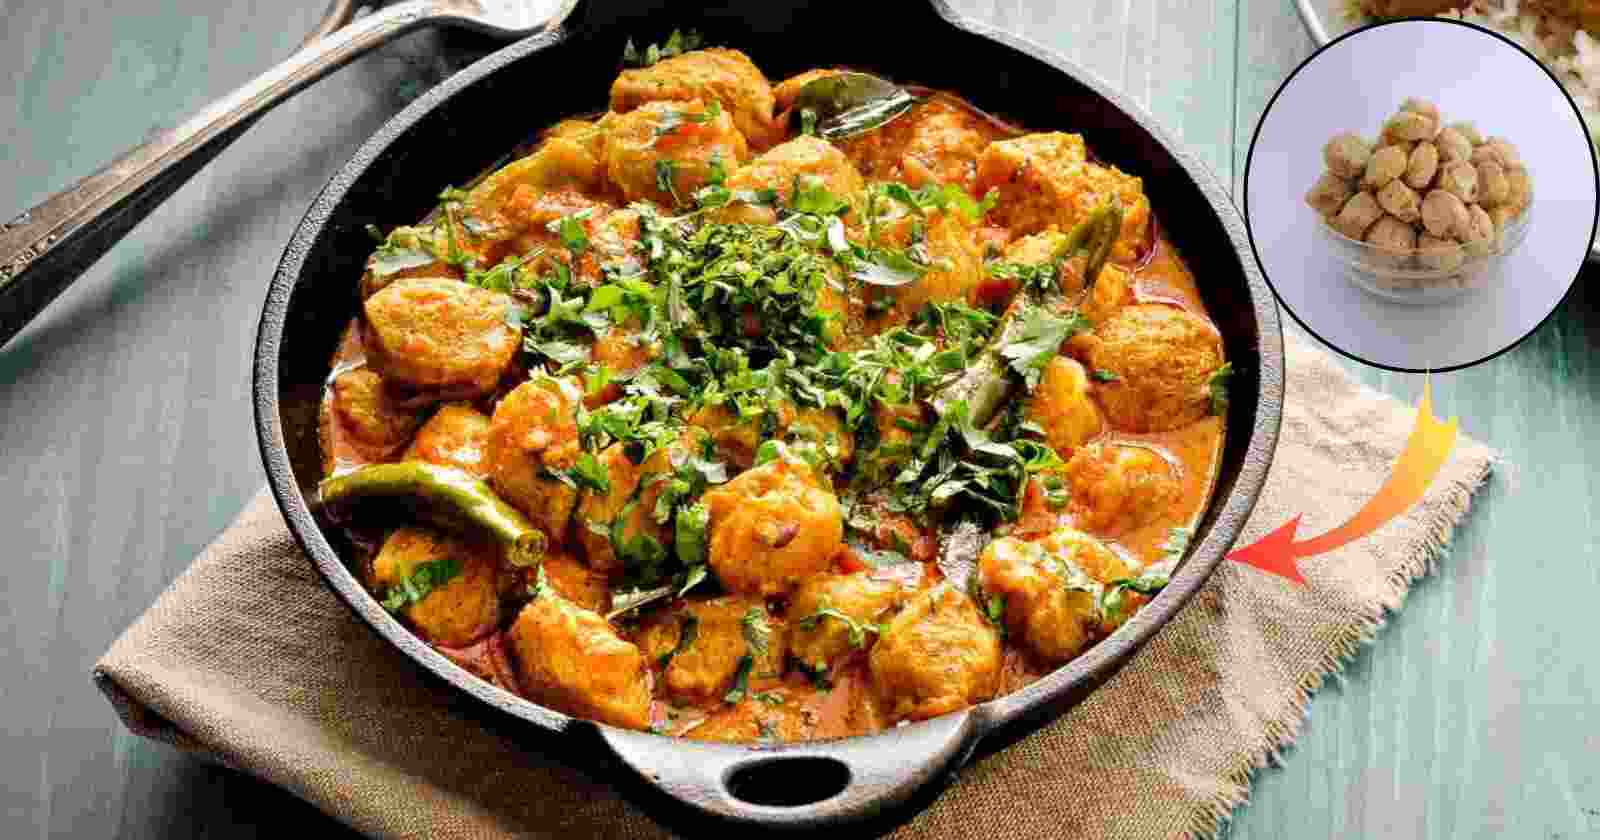 Soya Chunks Recipe: मसालेदार स्वादिष्ट सोया चंक्स में शामिल है कई पोषक तत्व खाते ही सब करेंगे वाह hinditonews.in